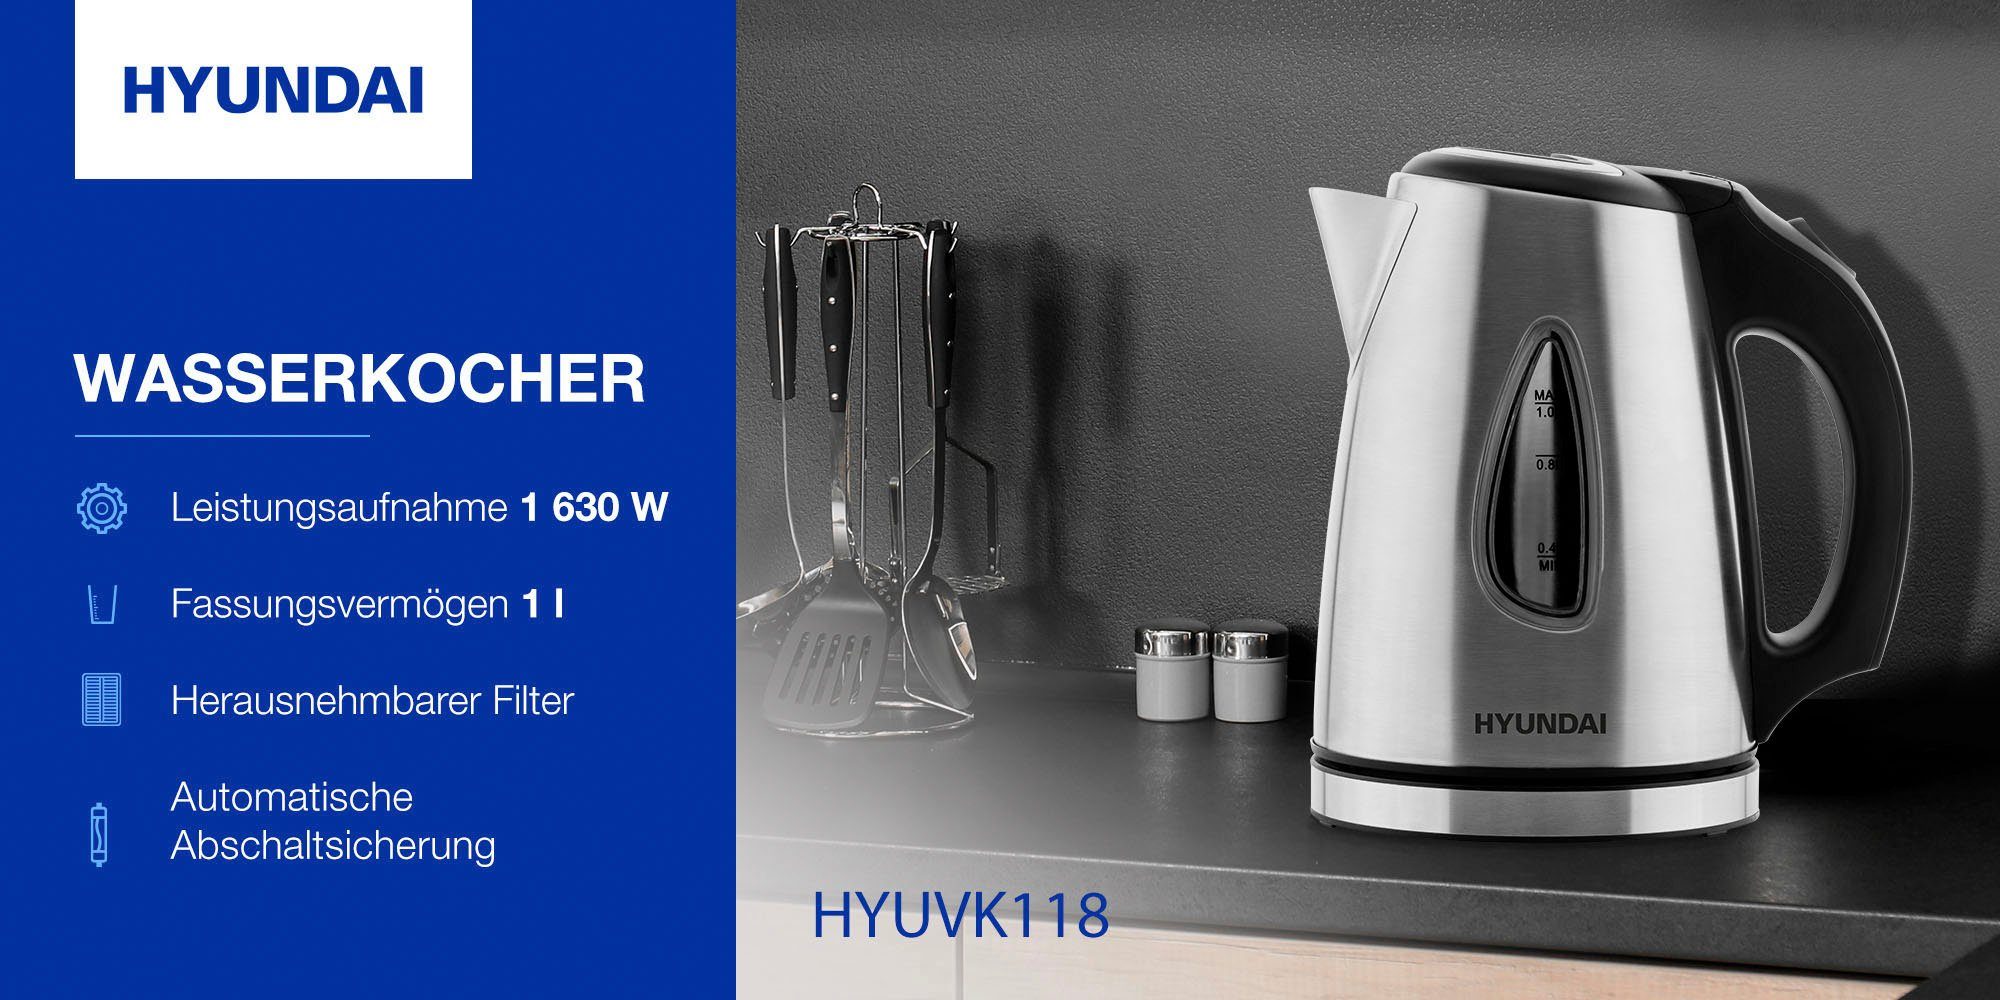 Hyundai Wasserkocher 1630 Abschaltautomatik, Drehbarer l, W, VK118, 1,0 Überhitzungsschutz, Sockel